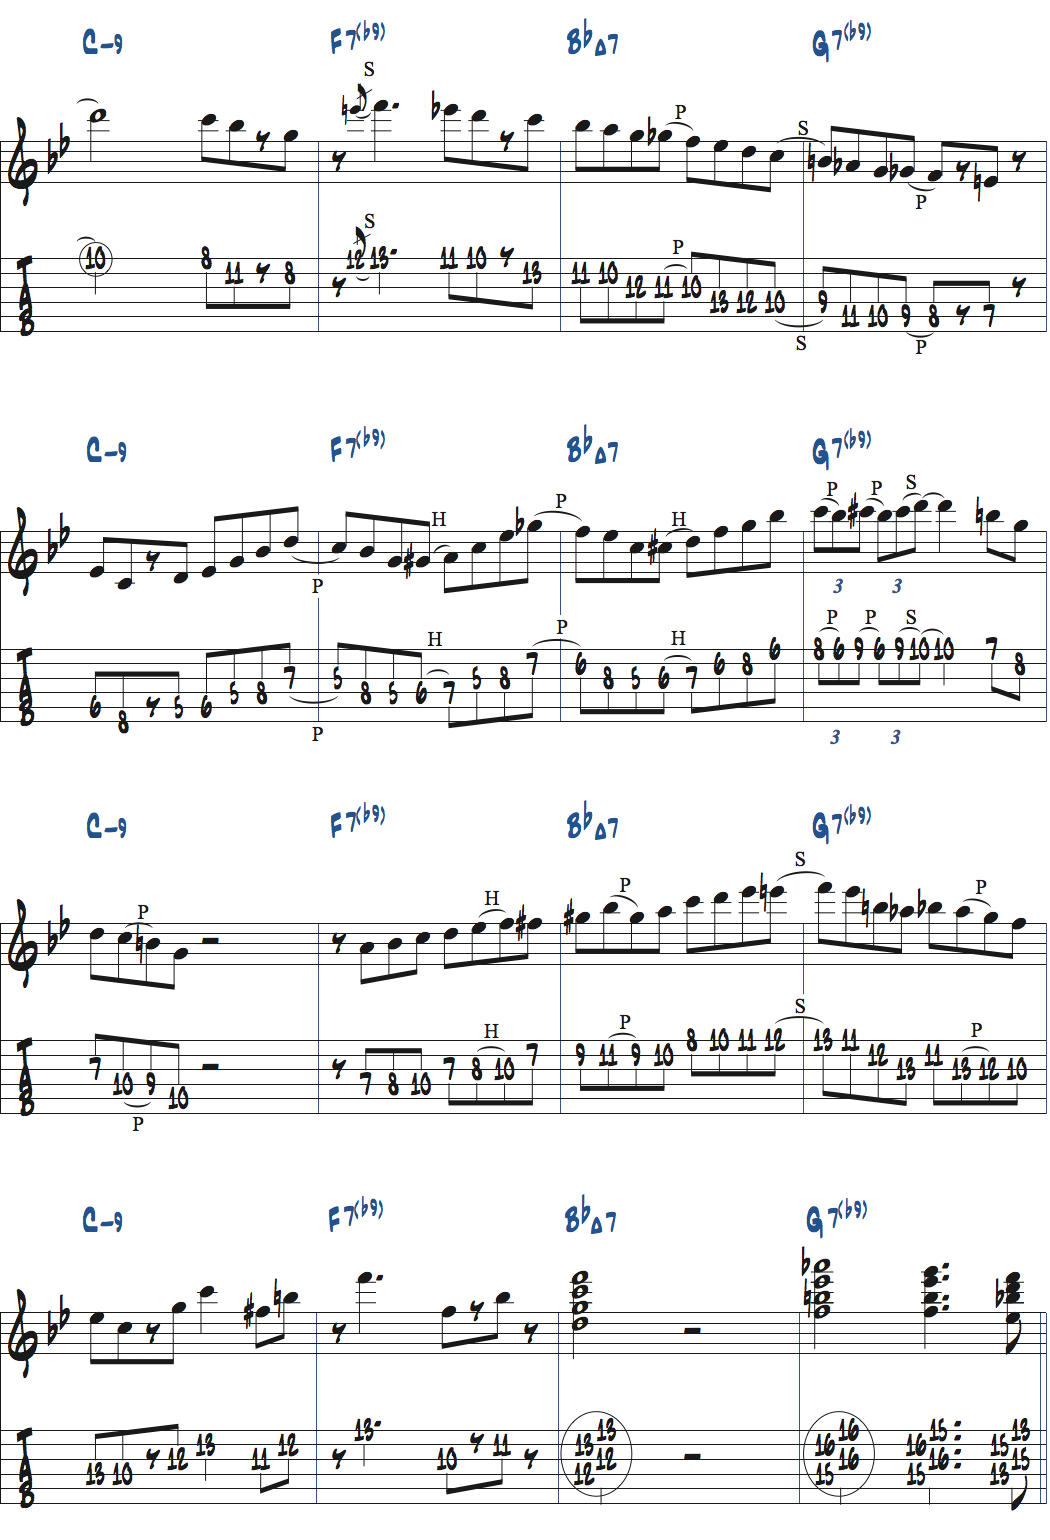 Cm9-F7(b9)-BbMa7-G7(b9)でのアドリブ例楽譜ページ2